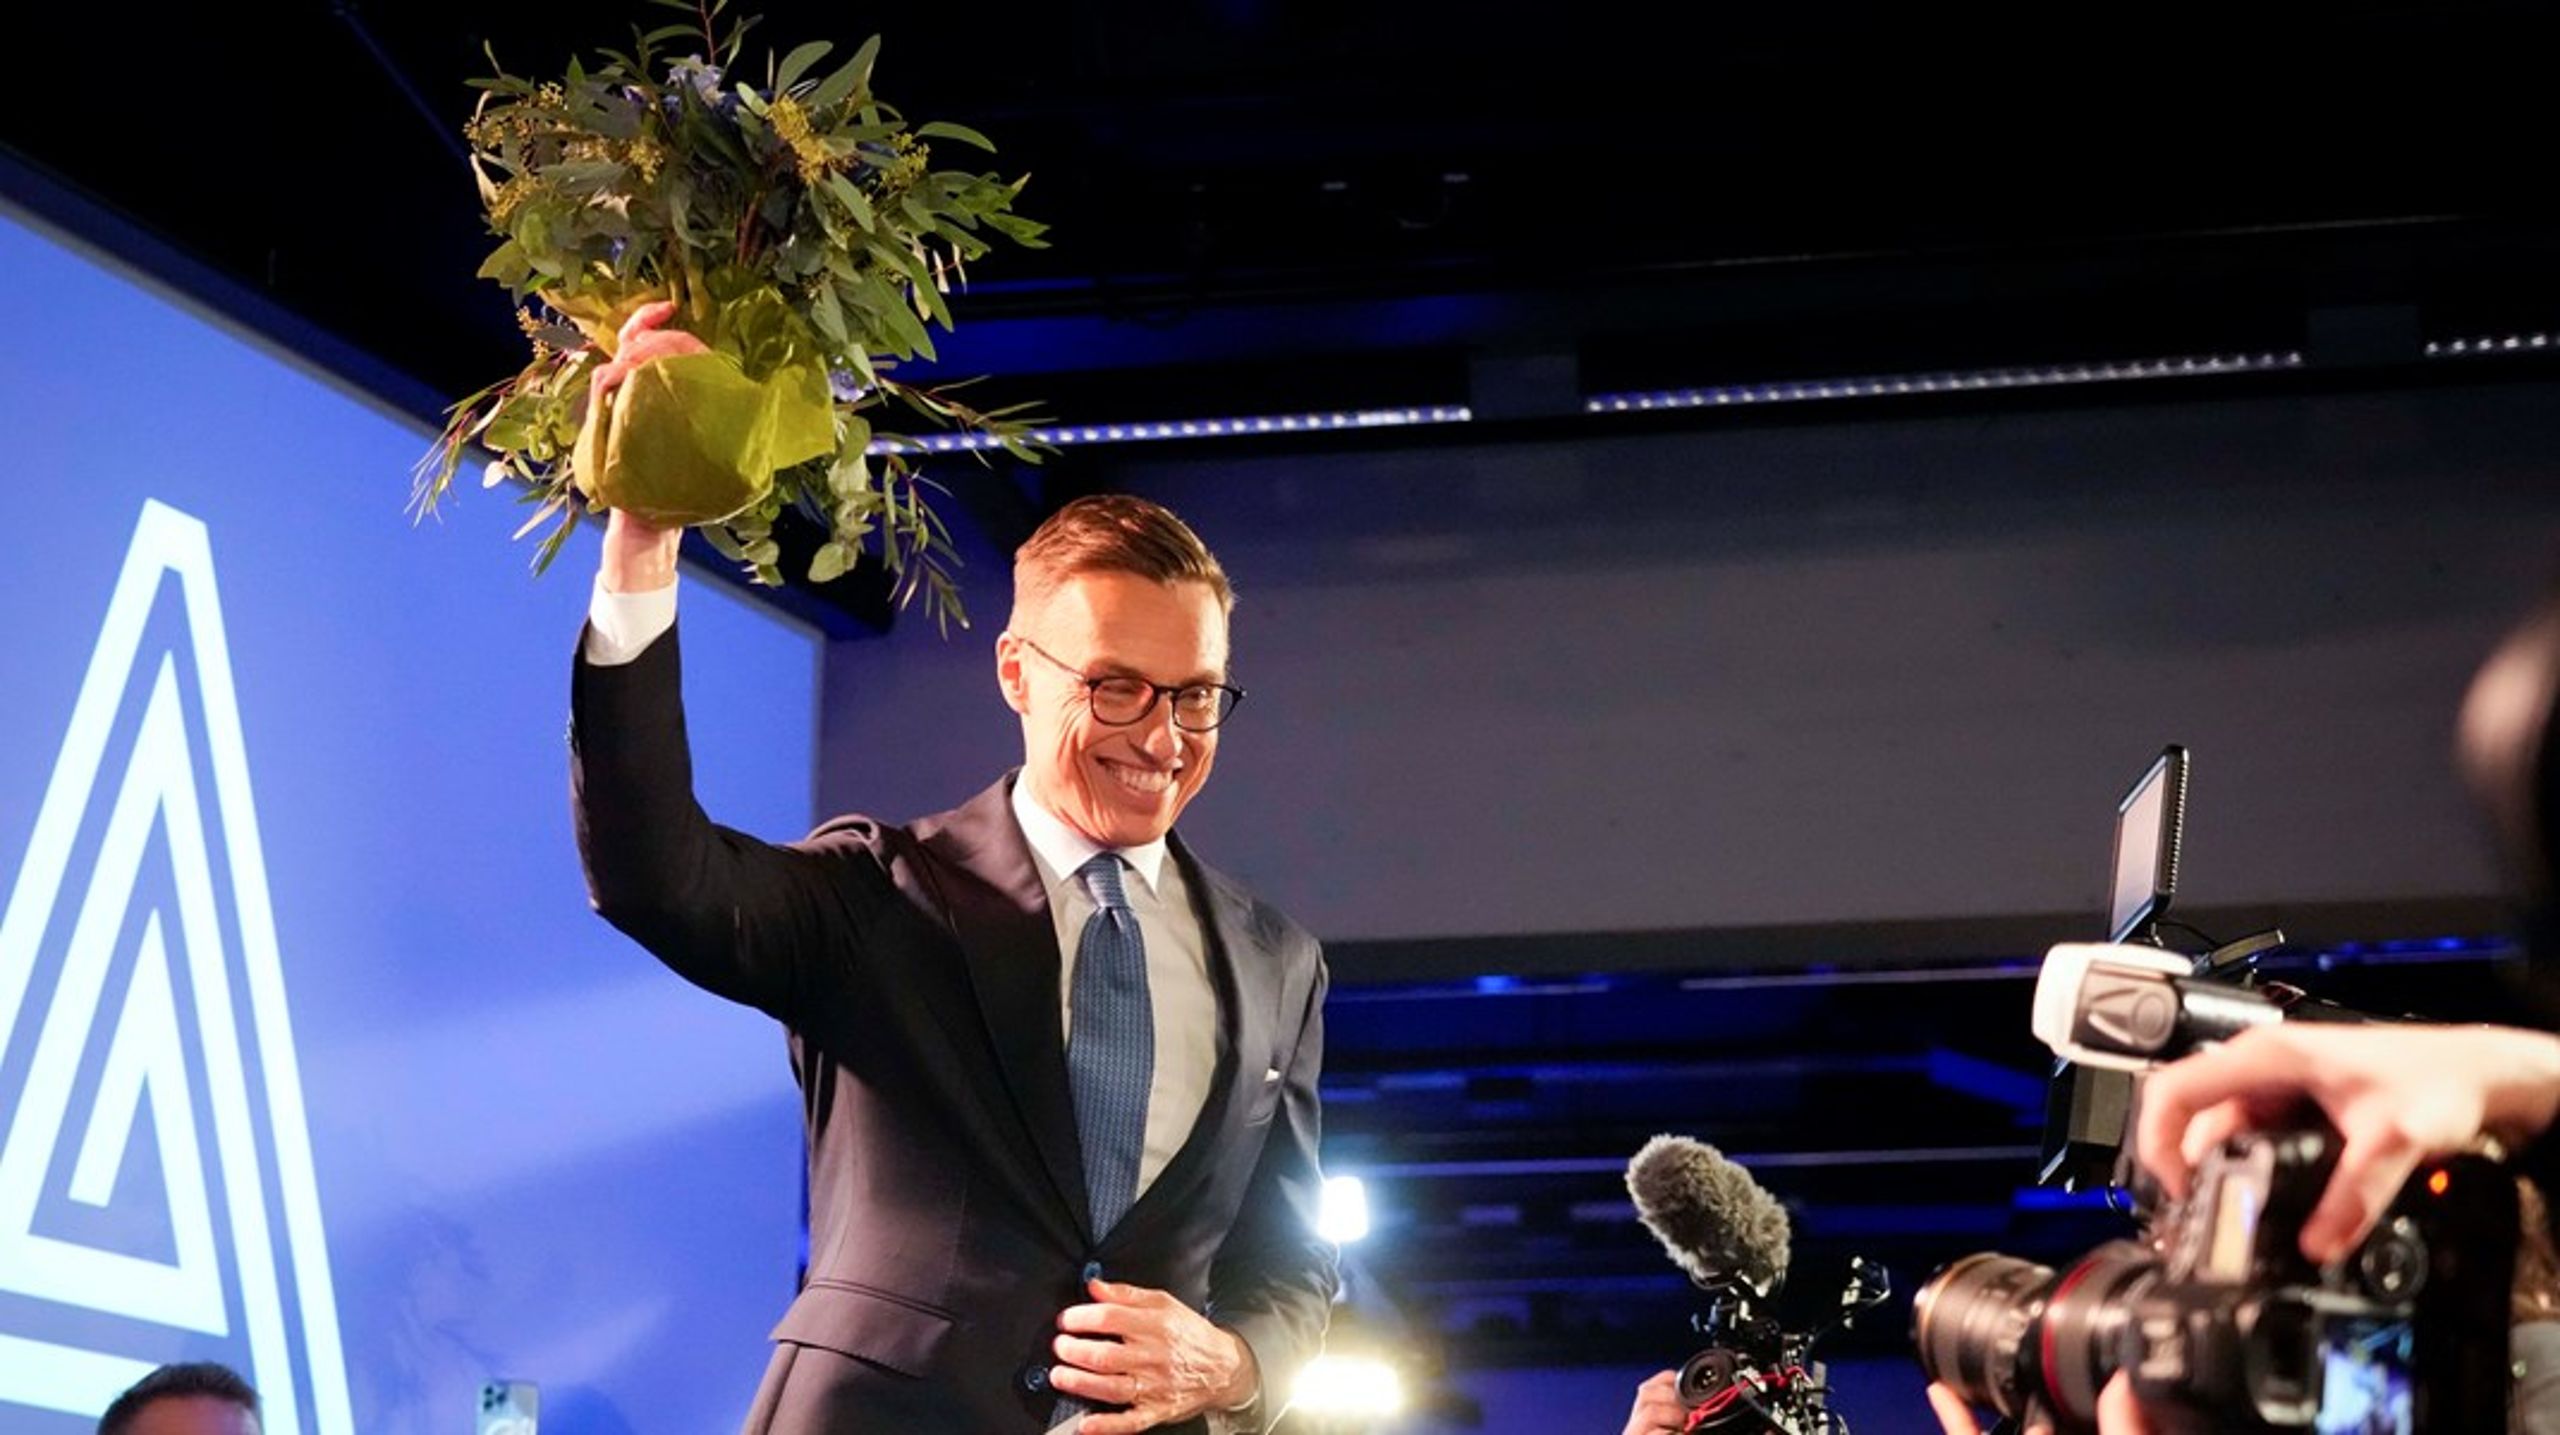 Den 1 mars blir Alexander Stubb Finlands nye president. Han efterträder partikamraten&nbsp;Sauli&nbsp;Niinistö.